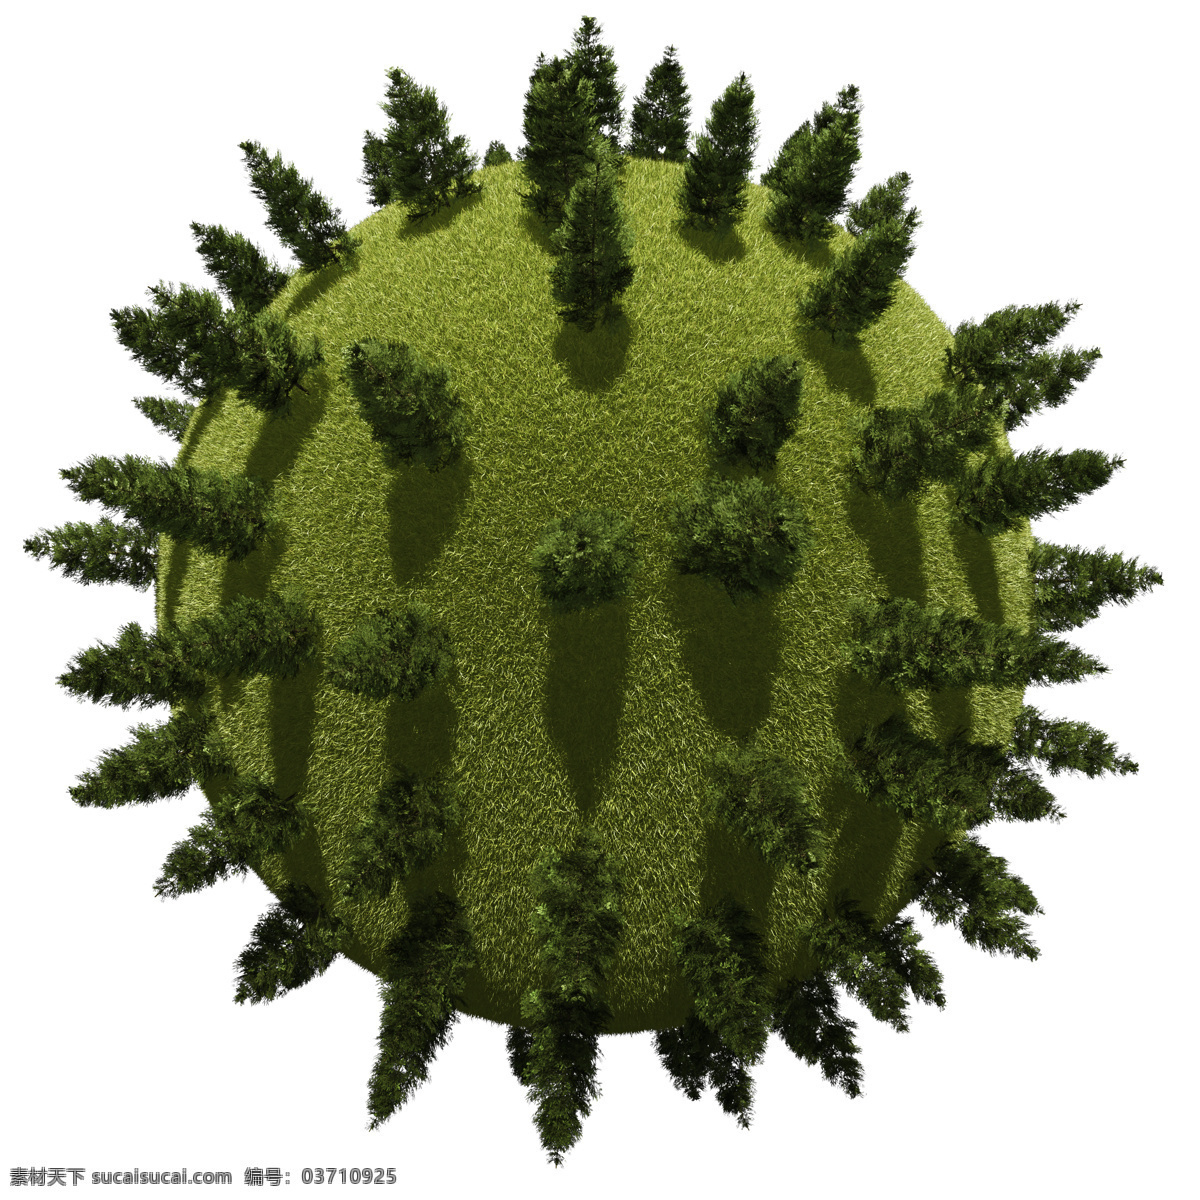 圆形 球体 上 大树 松树 星球 环保 植物 创意图片 其他风光 风景图片